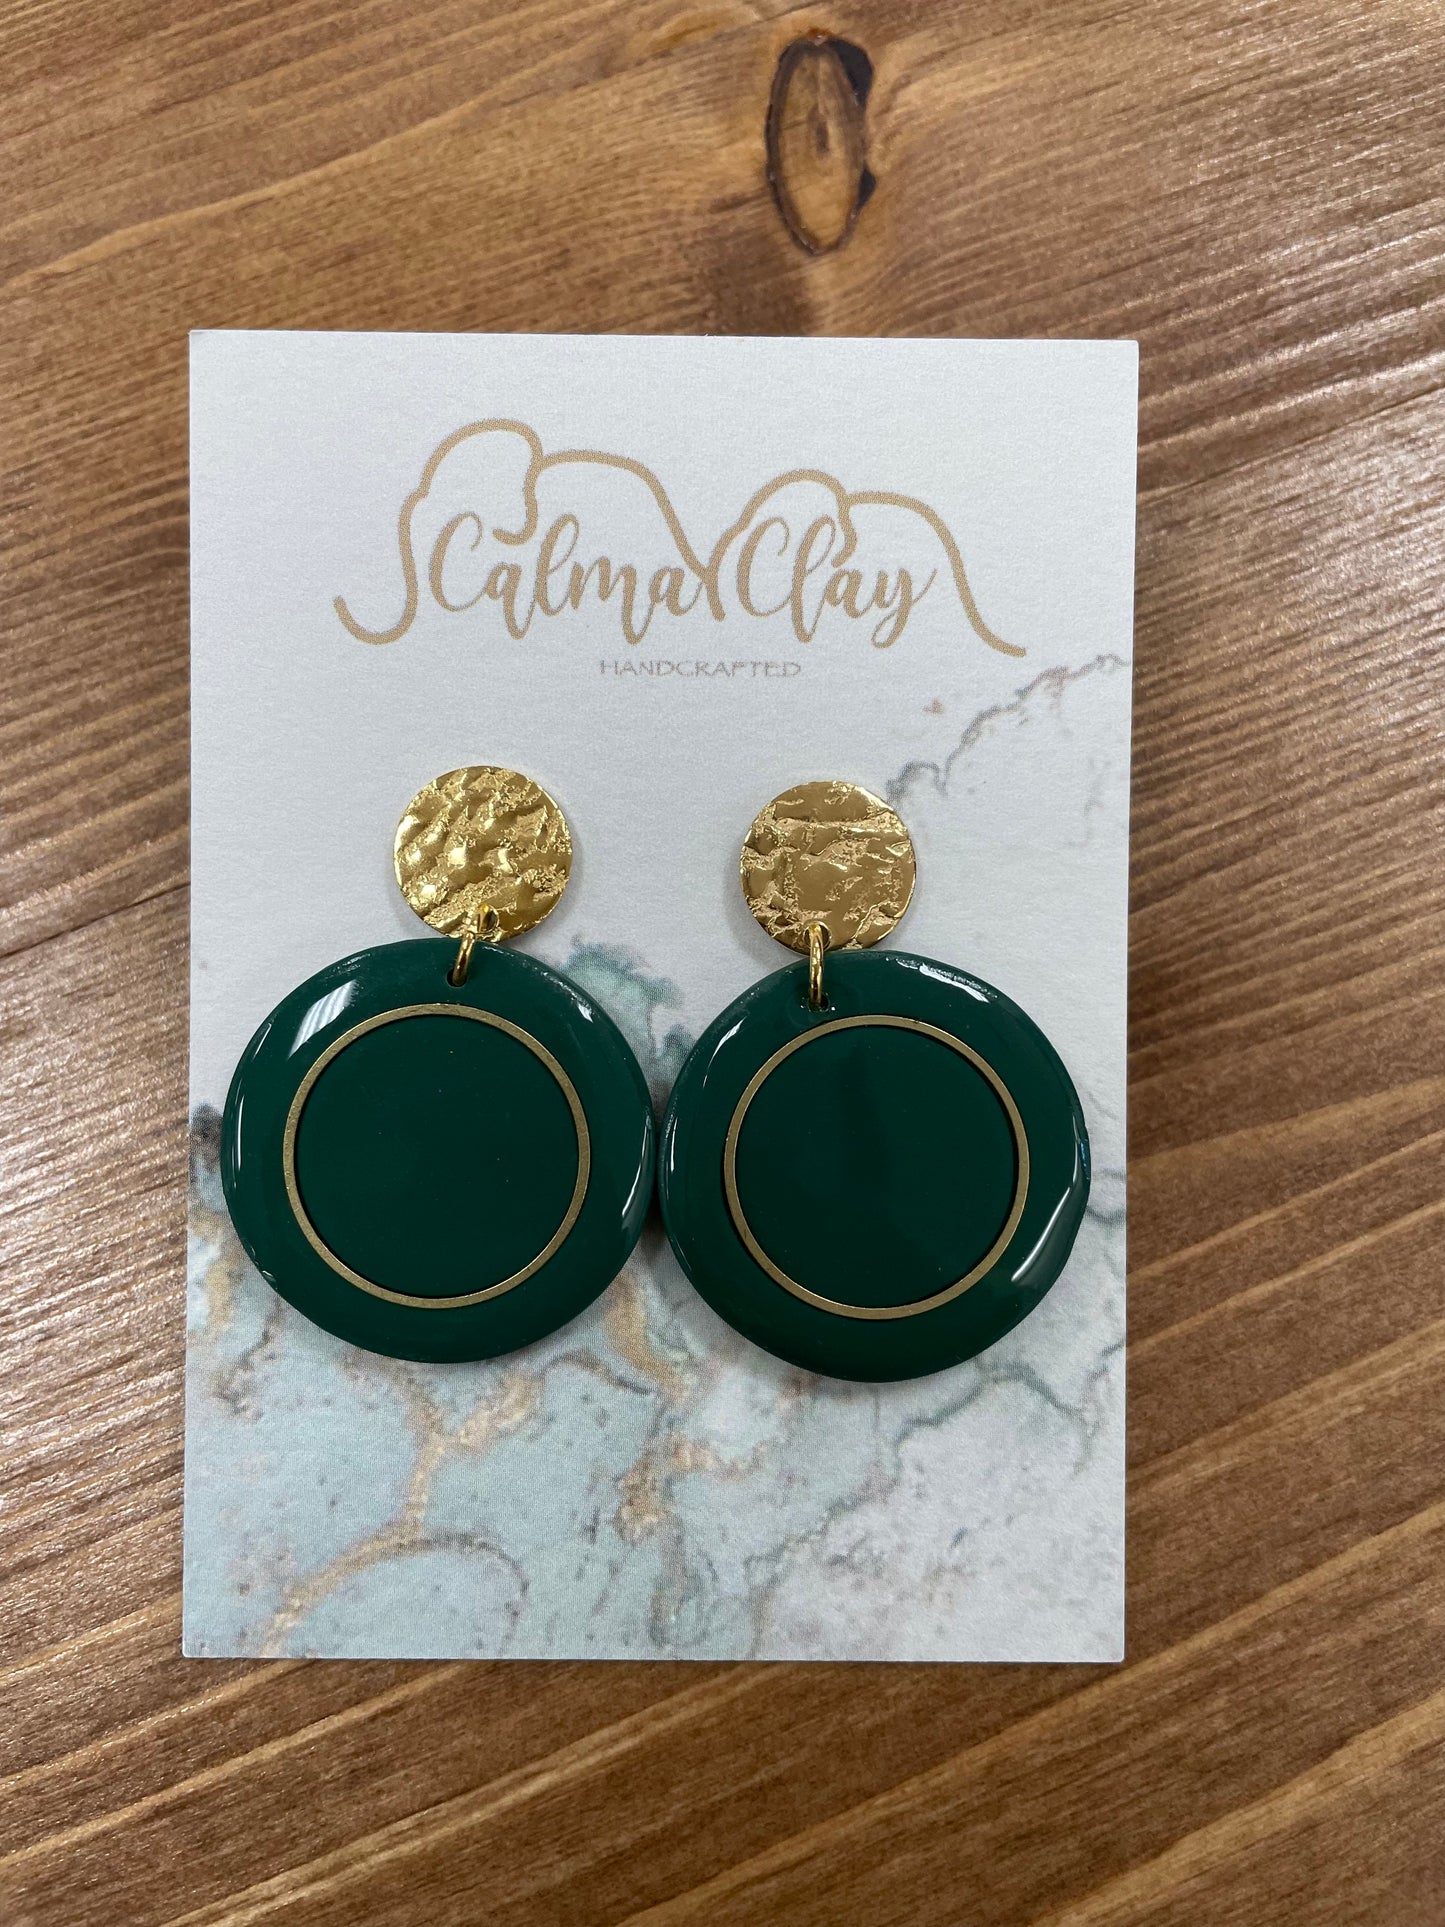 Calma Clay Emerald Circle Earrings